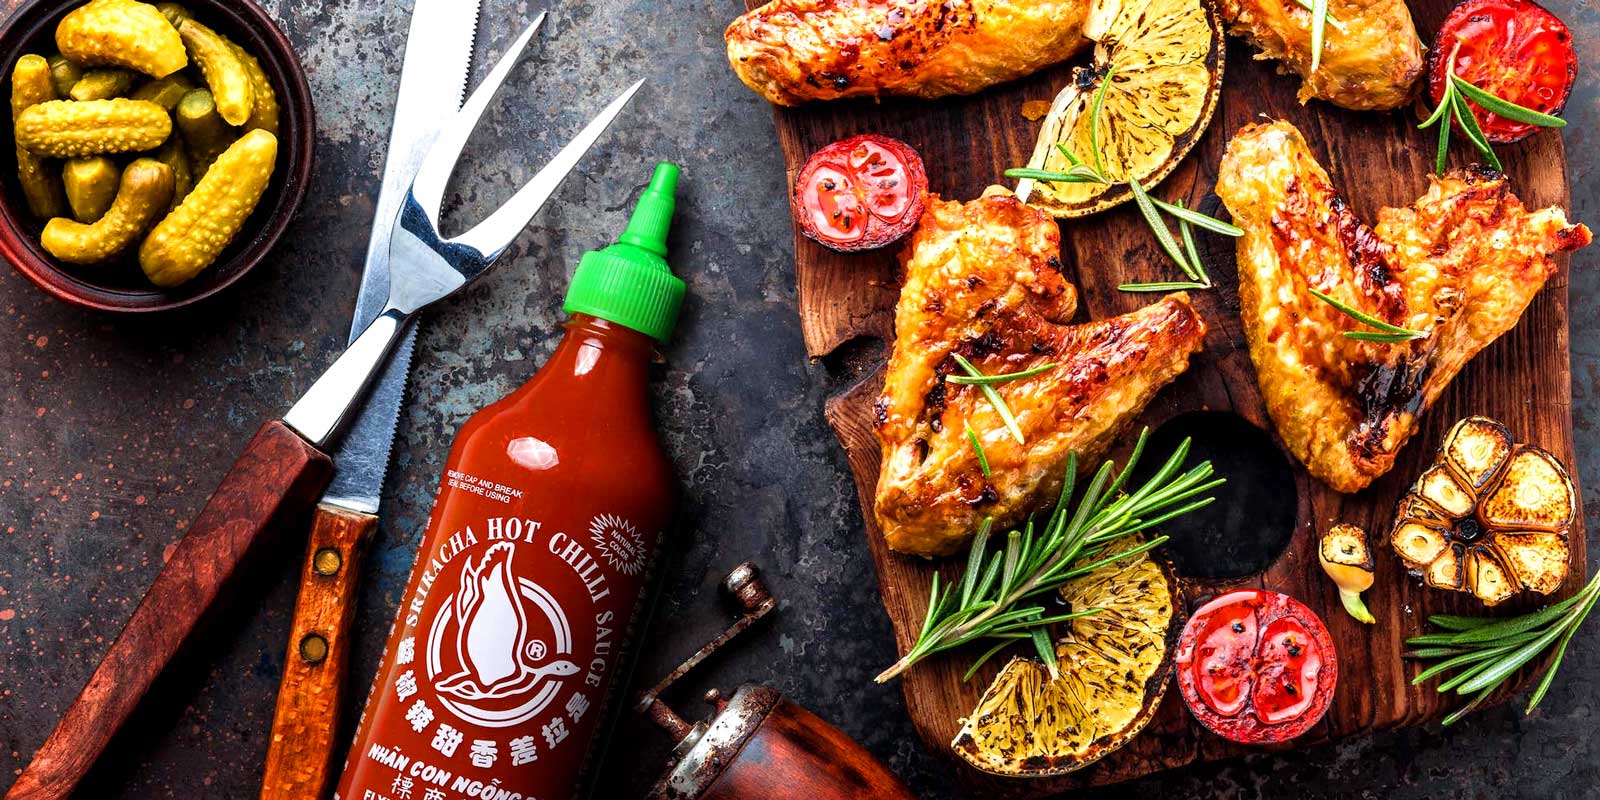 Saus Sriracha dari Flying Goose Pada tahun 1999, merek saus Thailand premium kami, Flying Goose, diluncurkan dengan tujuan untuk meningkatkan standar saus pedas dan menyediakan tingkat rasa maksimal bagi pecinta kuliner untuk melengkapi segala jenis suguhan lezat.